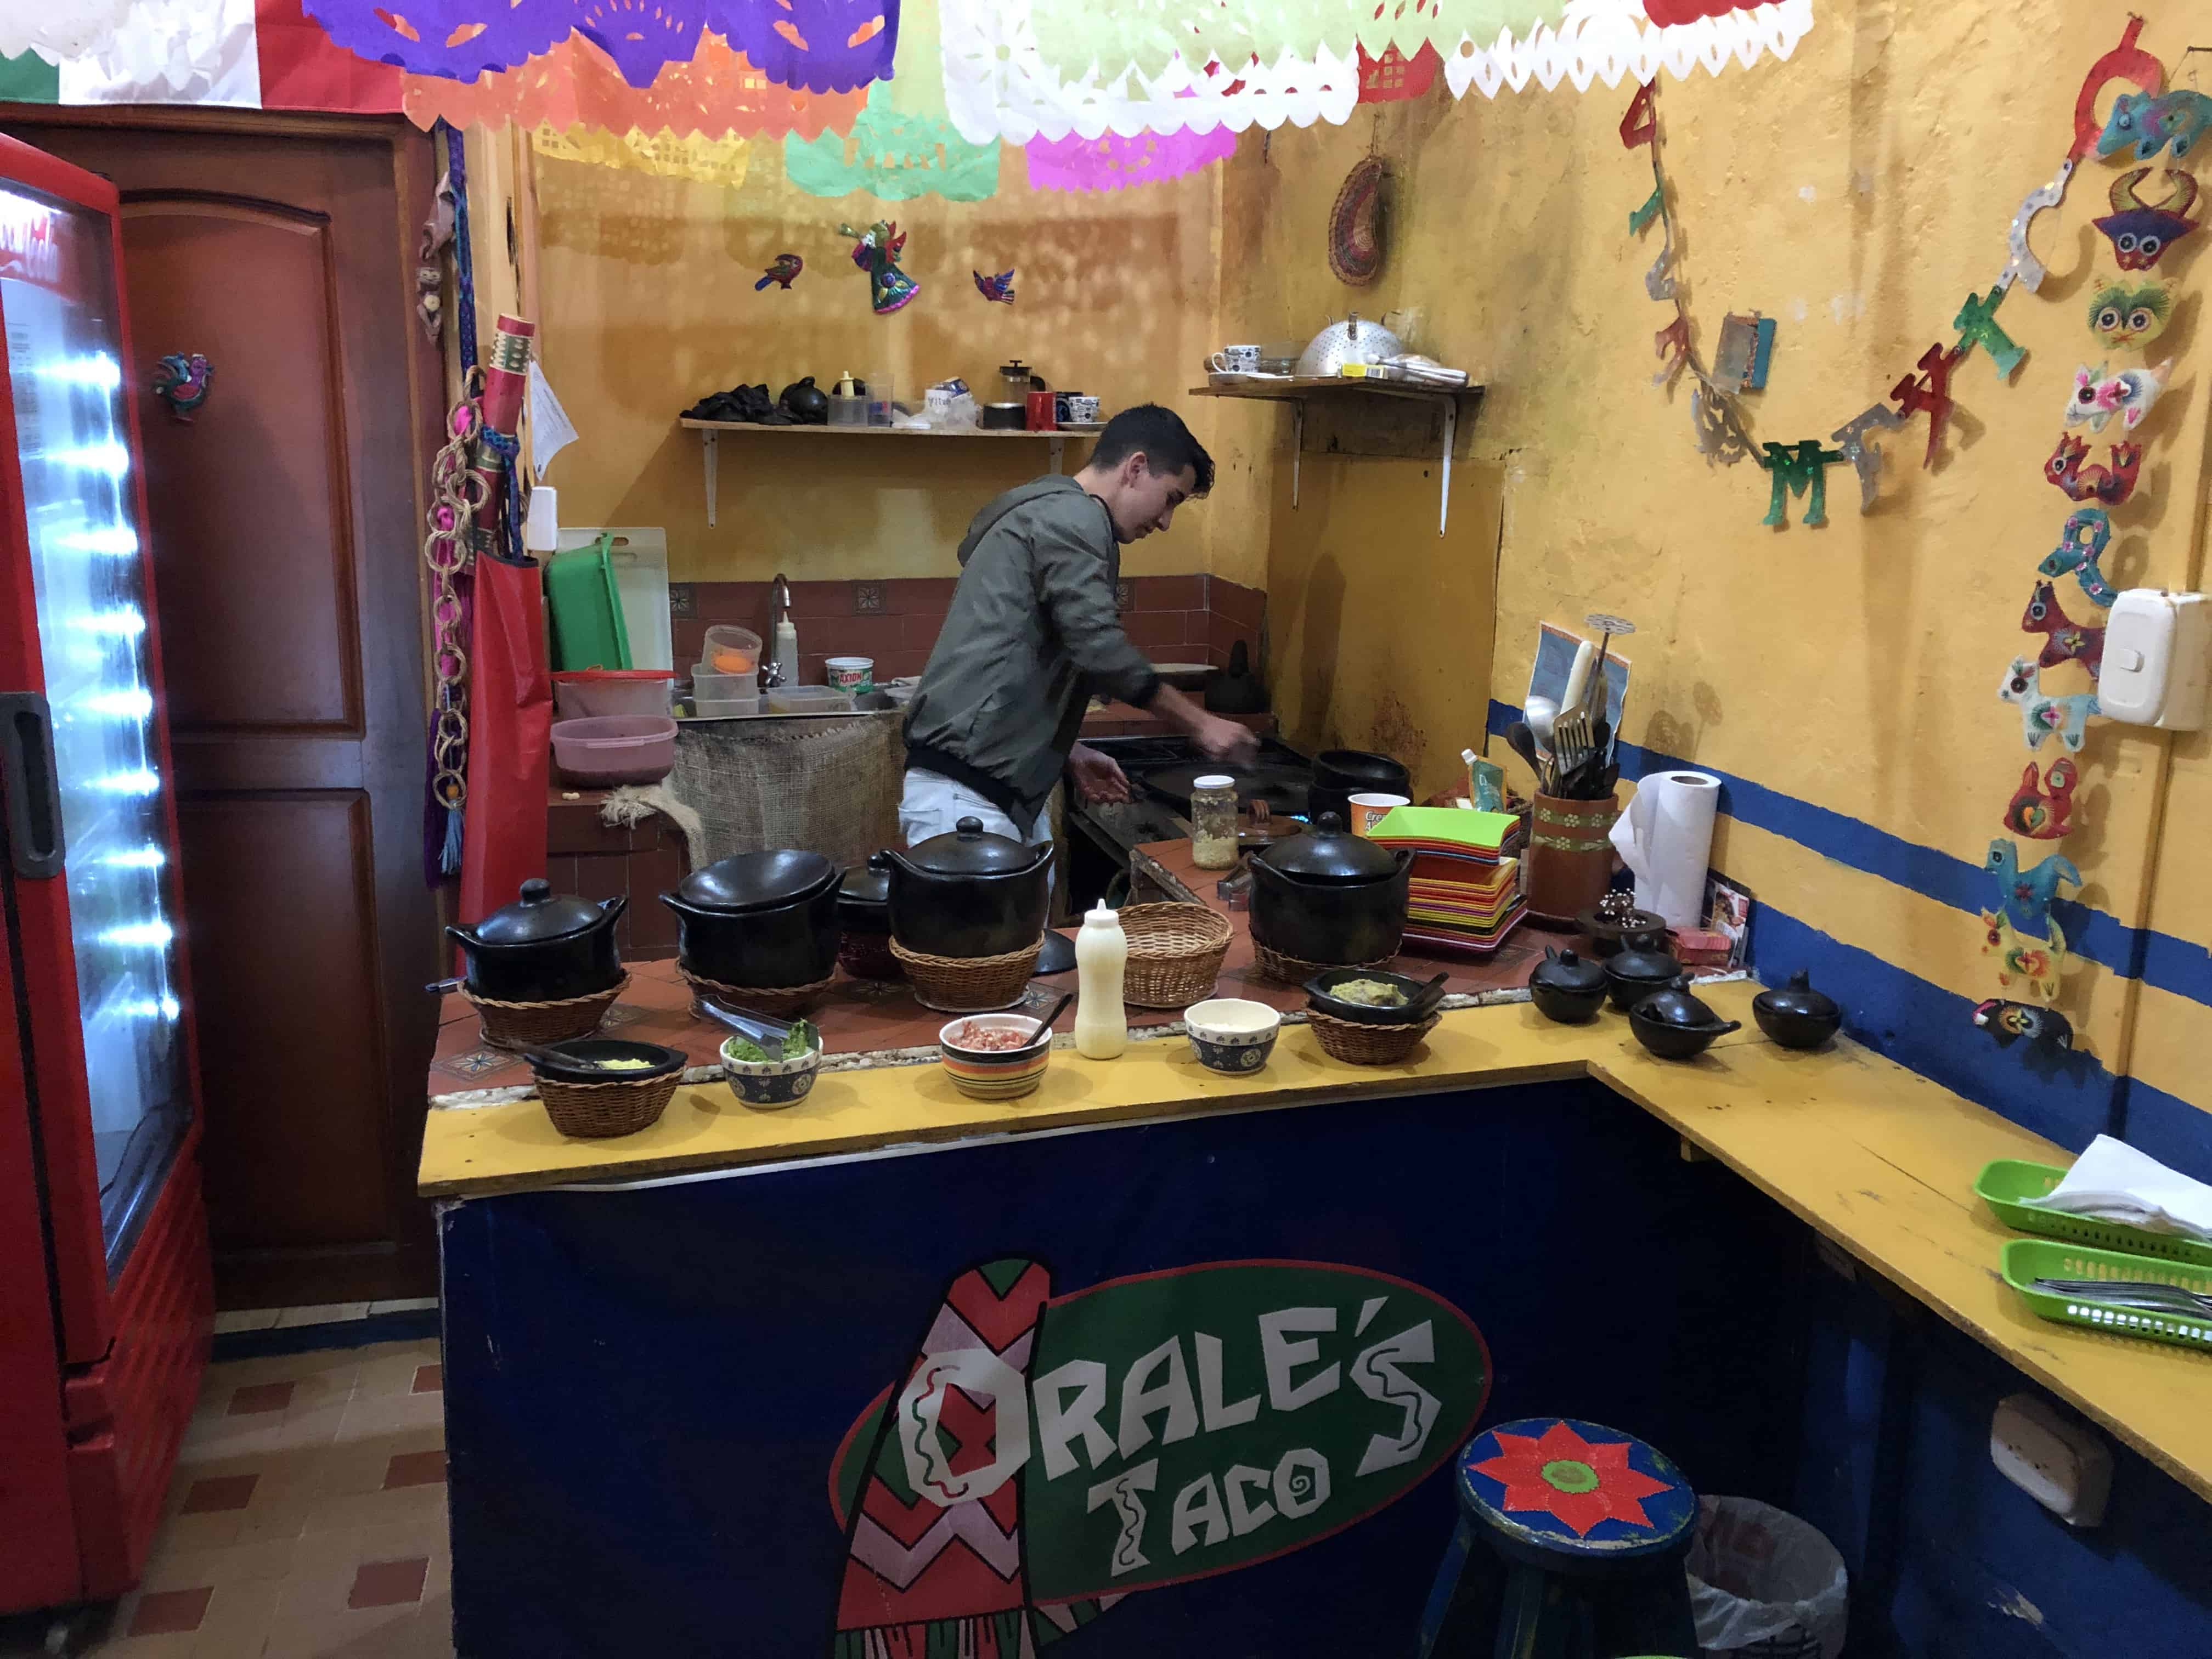 Orale's Tacos